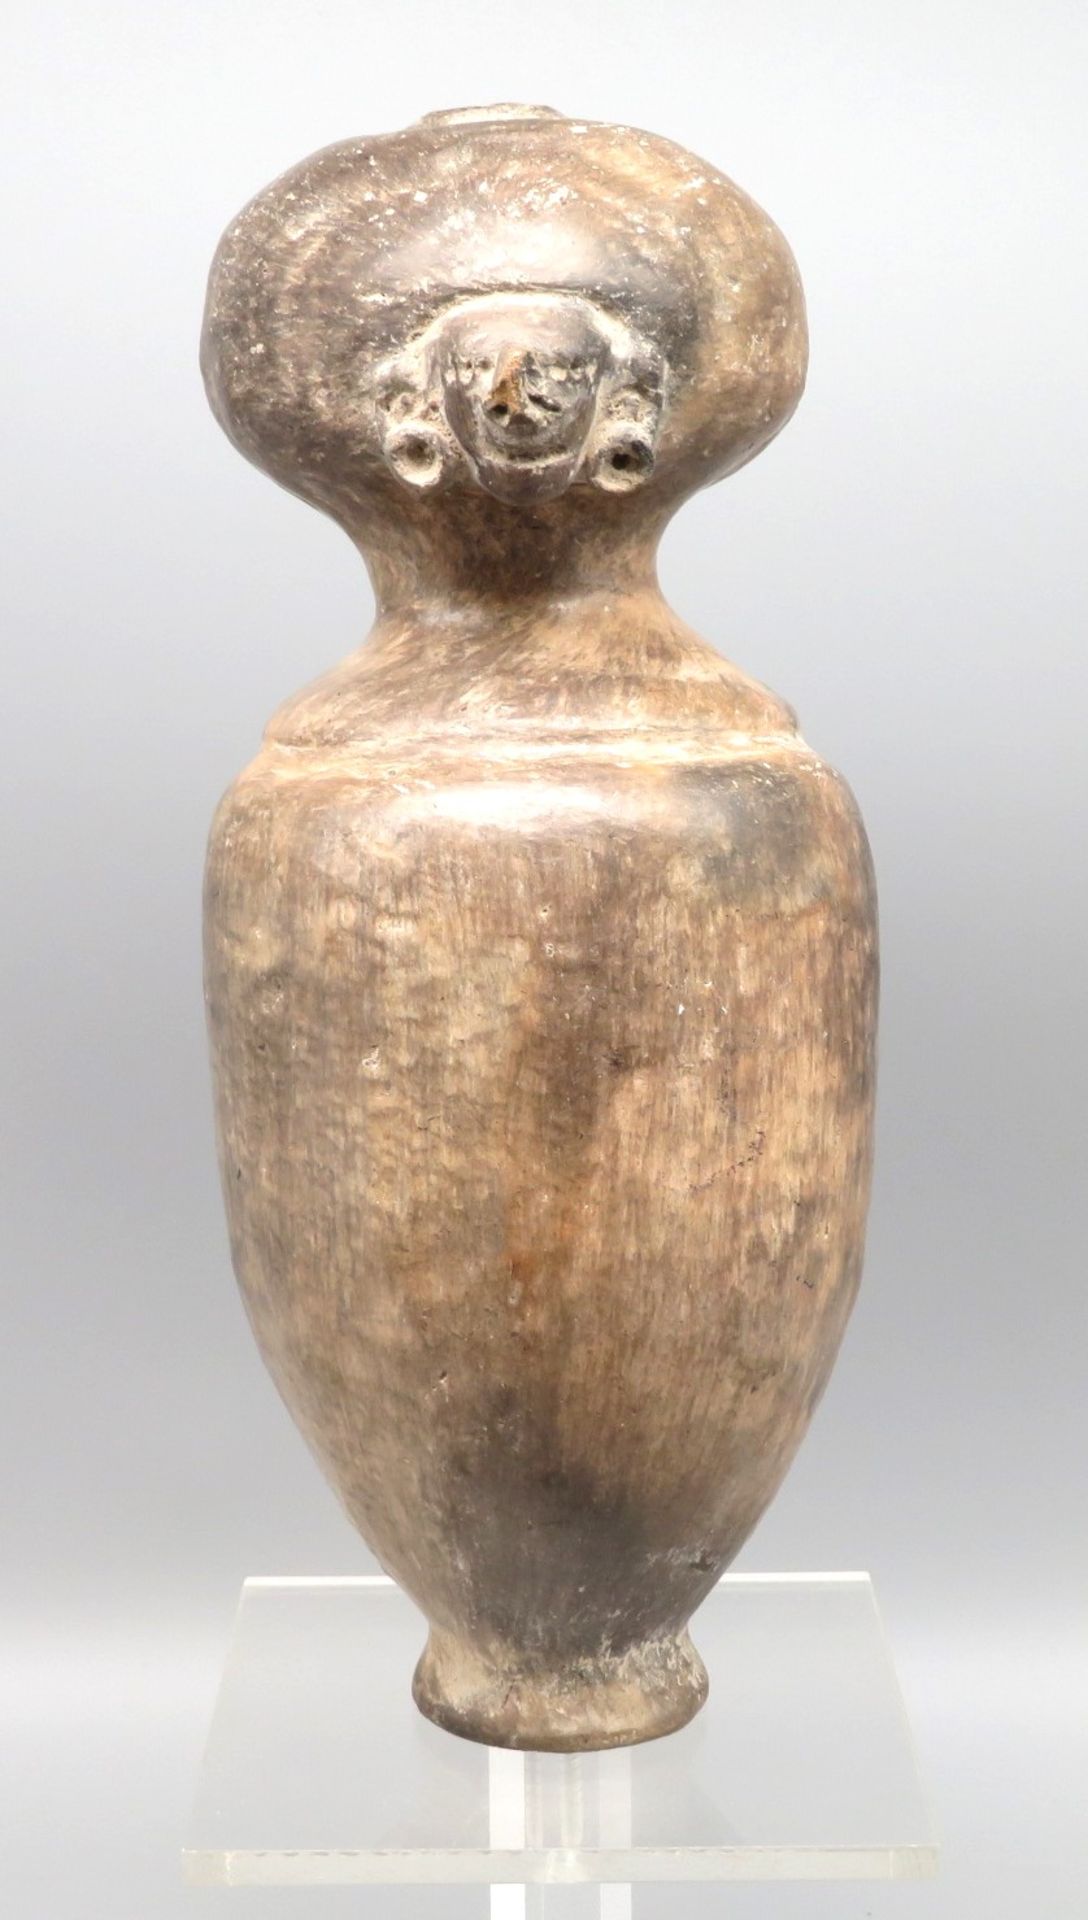 Seltene Skulptur, Ecuador, angenommenes Alter 500 - 1500 Jahre, Ton gebrannt, Thermoluminiszenz-Gut